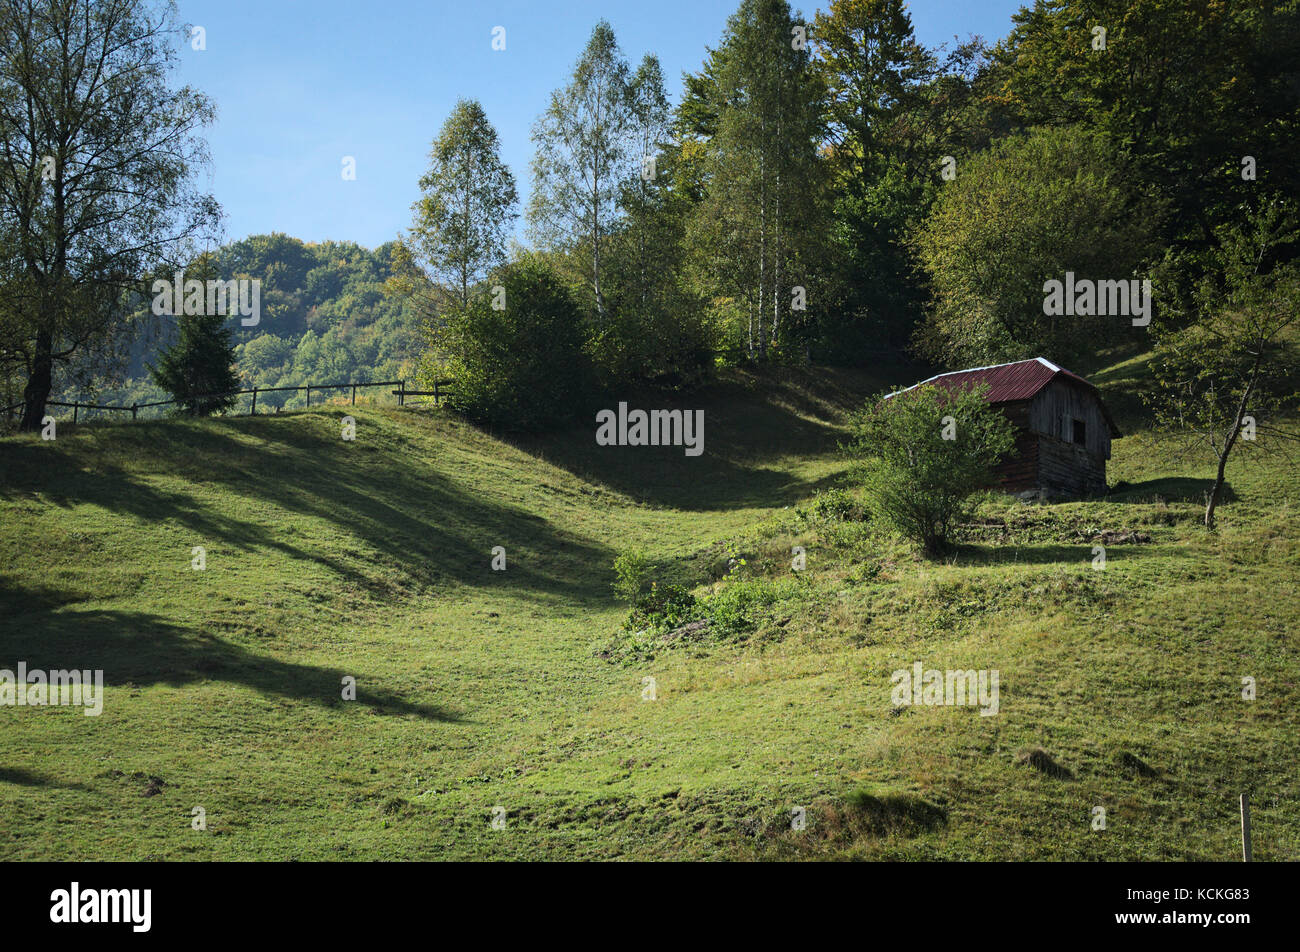 Landschaft, Häuschen auf dem Hügel, grüne wellige Wiese mit langen Schatten der umliegenden Bäume, ländliche Bild. Stockfoto